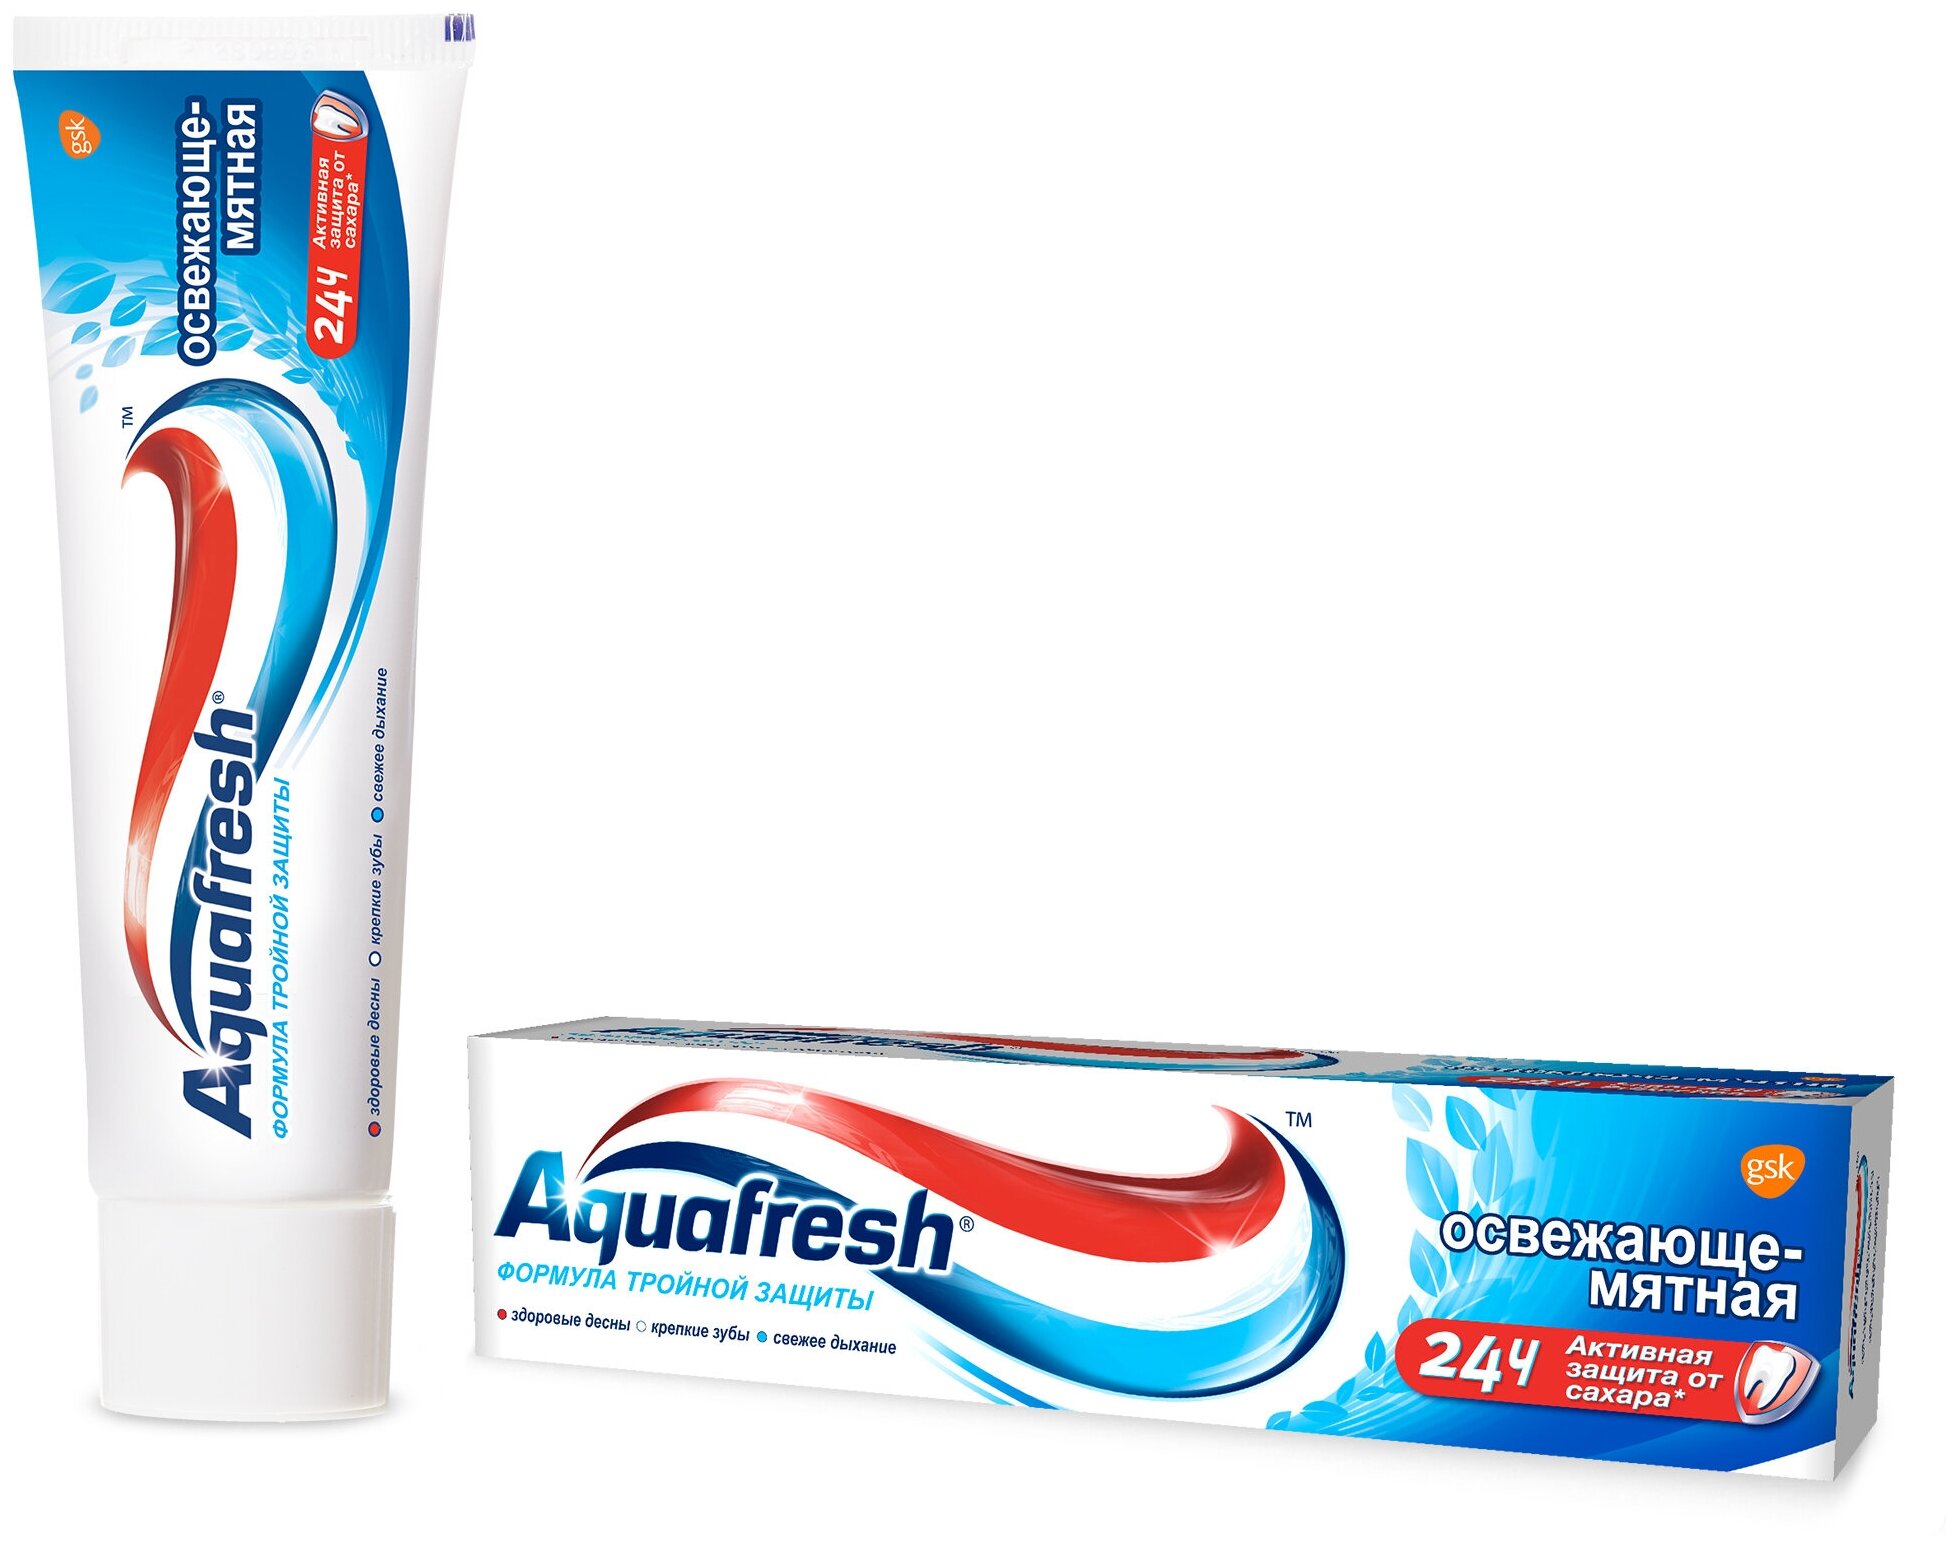 Зубная паста Aquafresh Тройная защита Освежающе-Мятная, 100 мл - фото №1